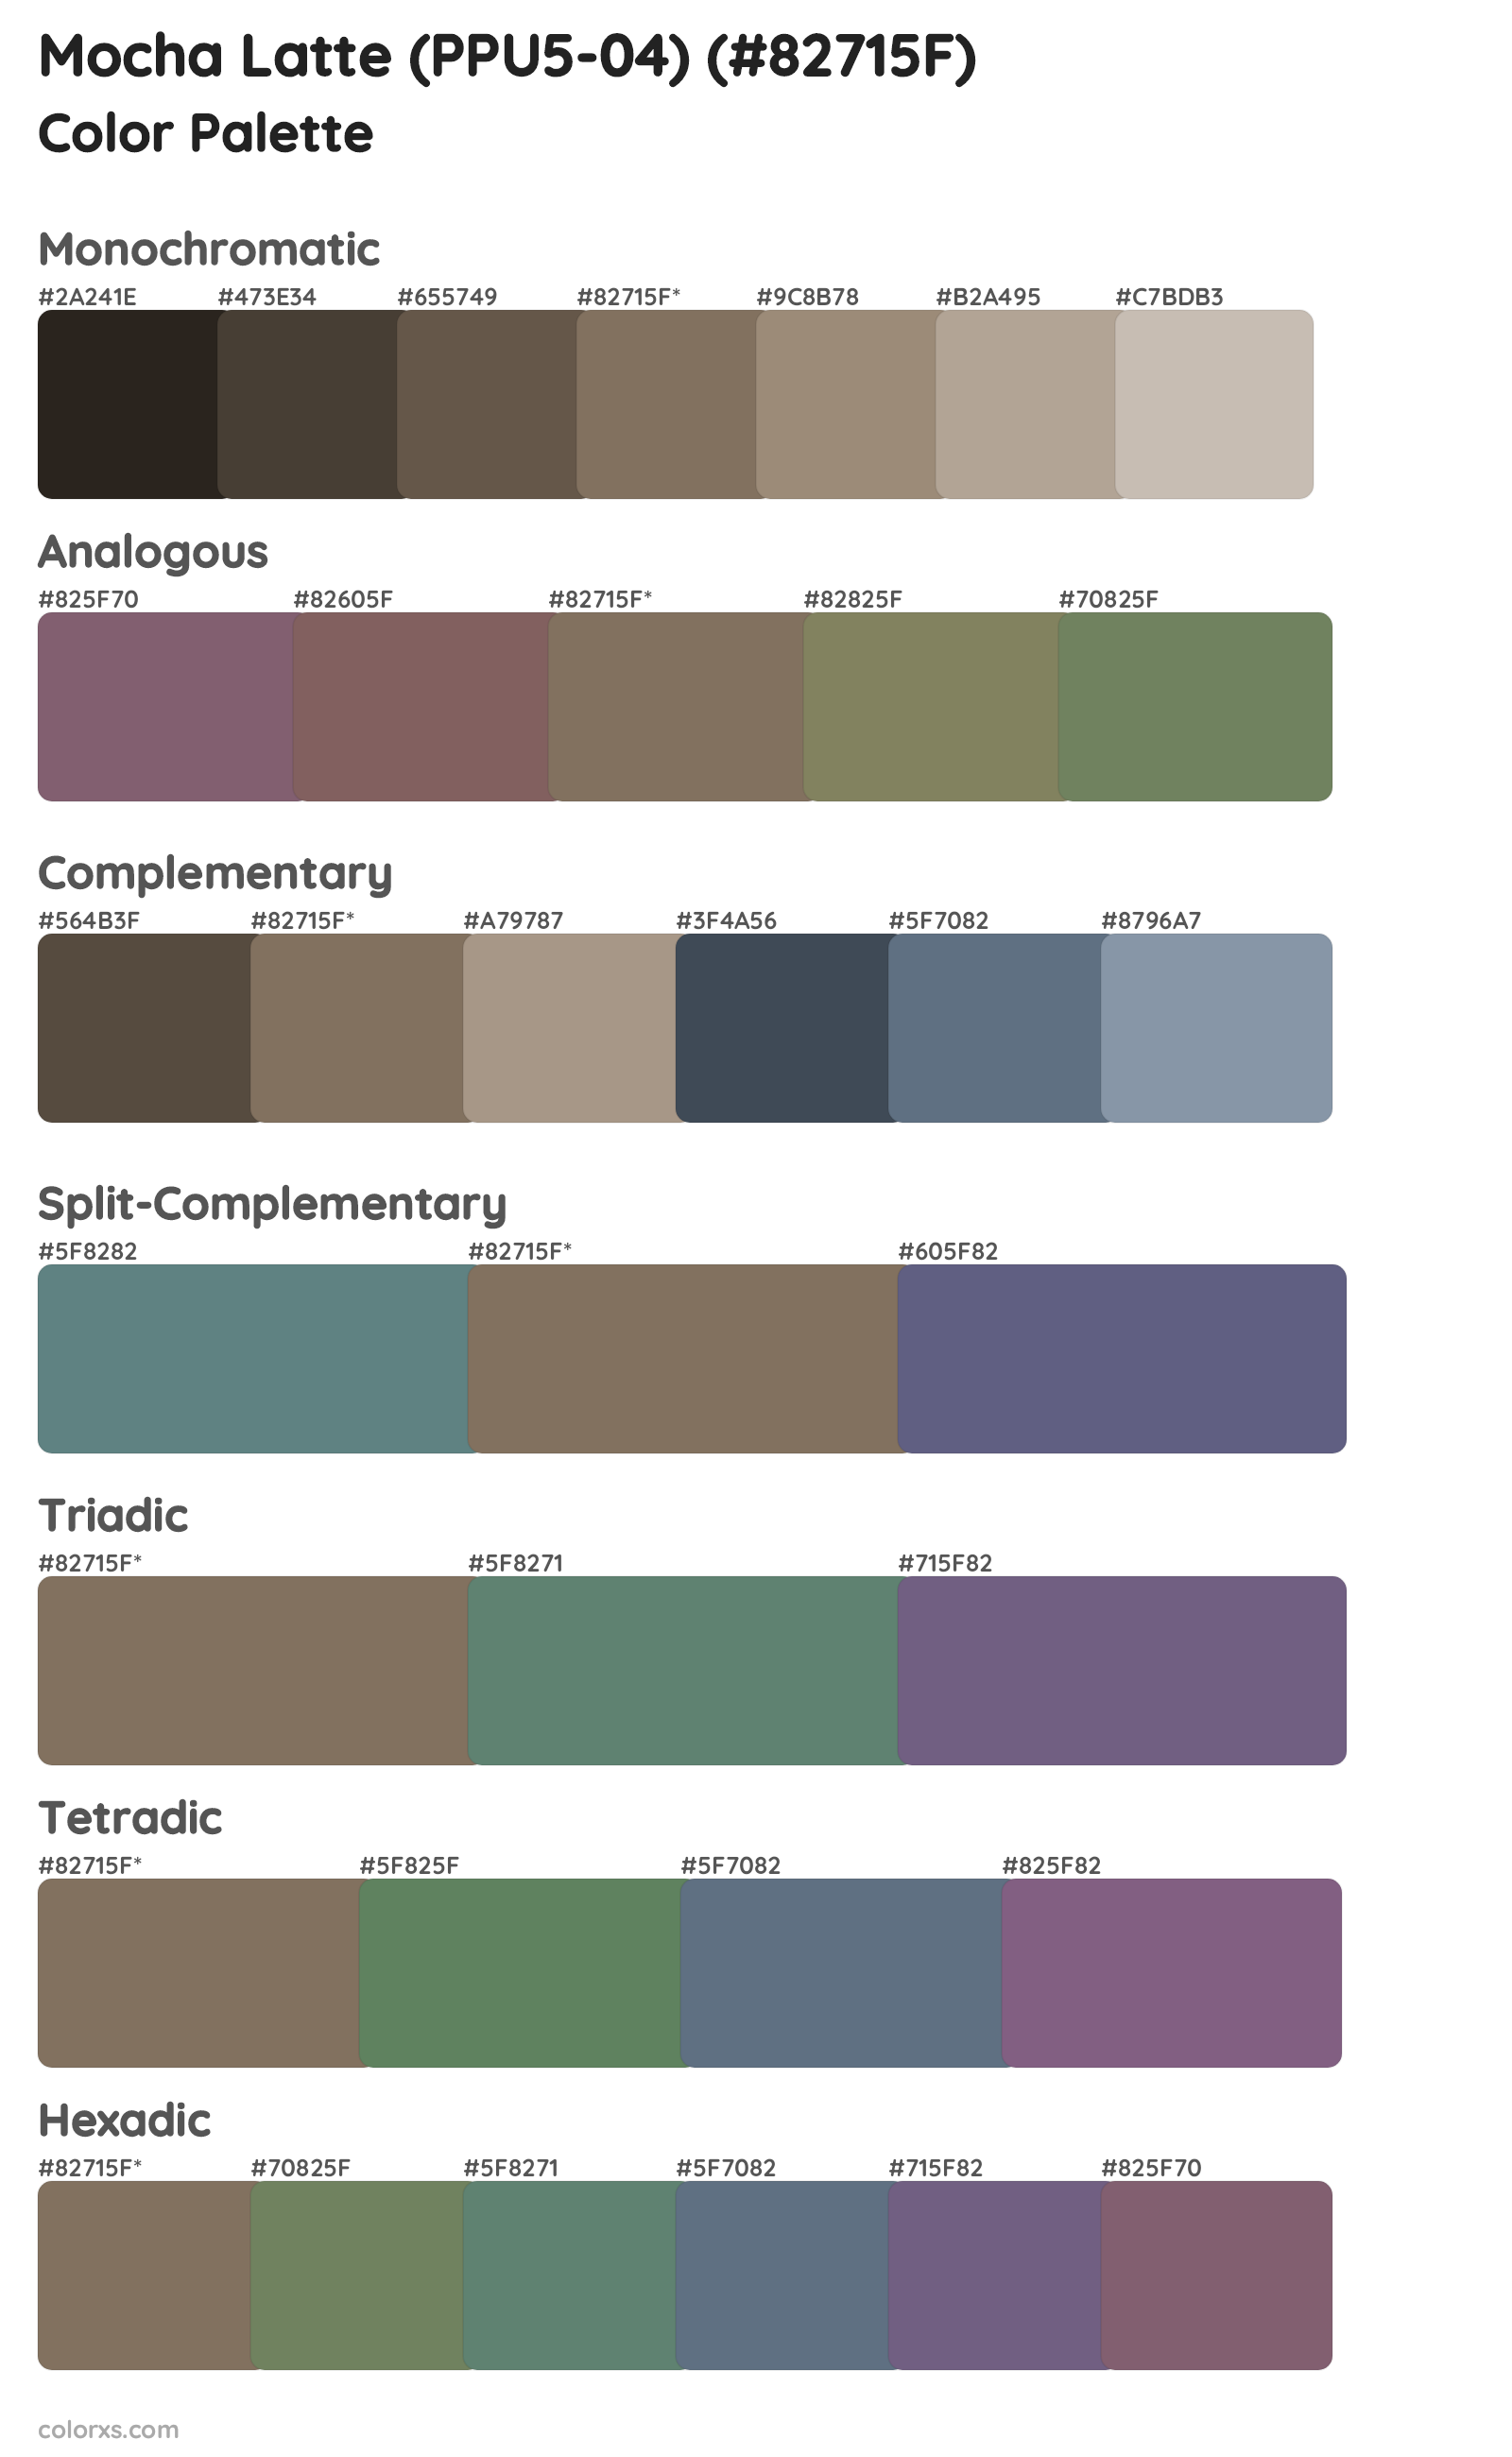 Mocha Latte (PPU5-04) Color Scheme Palettes